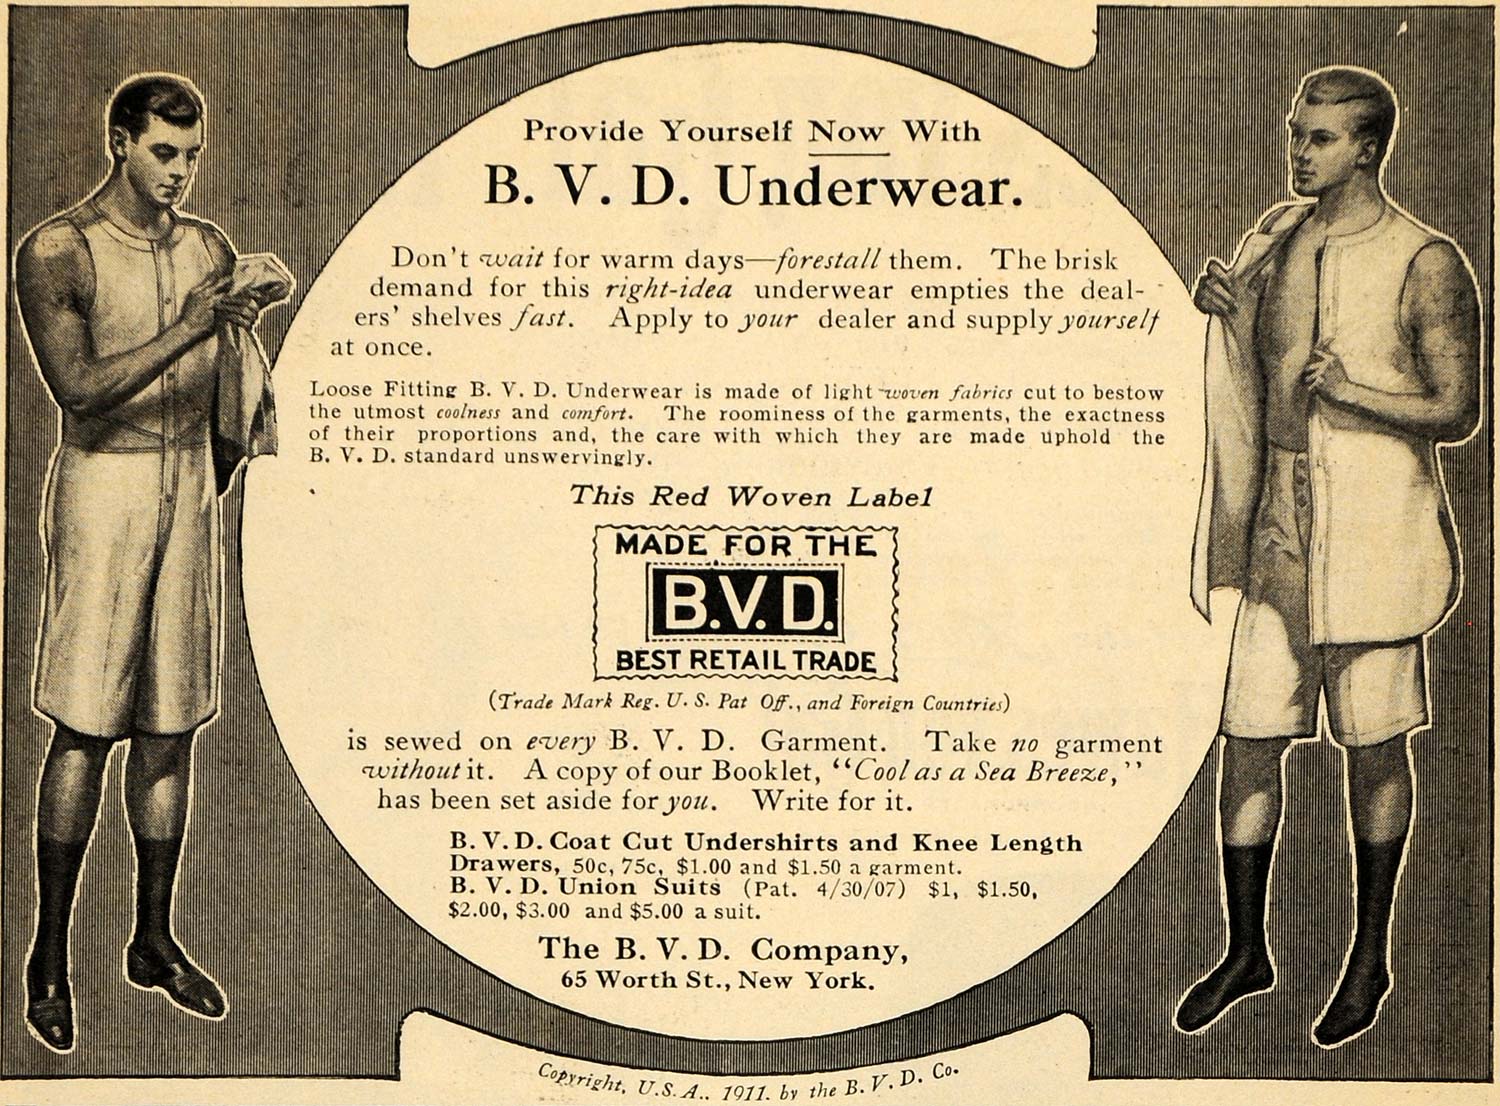 Union suits, 1920s-30s